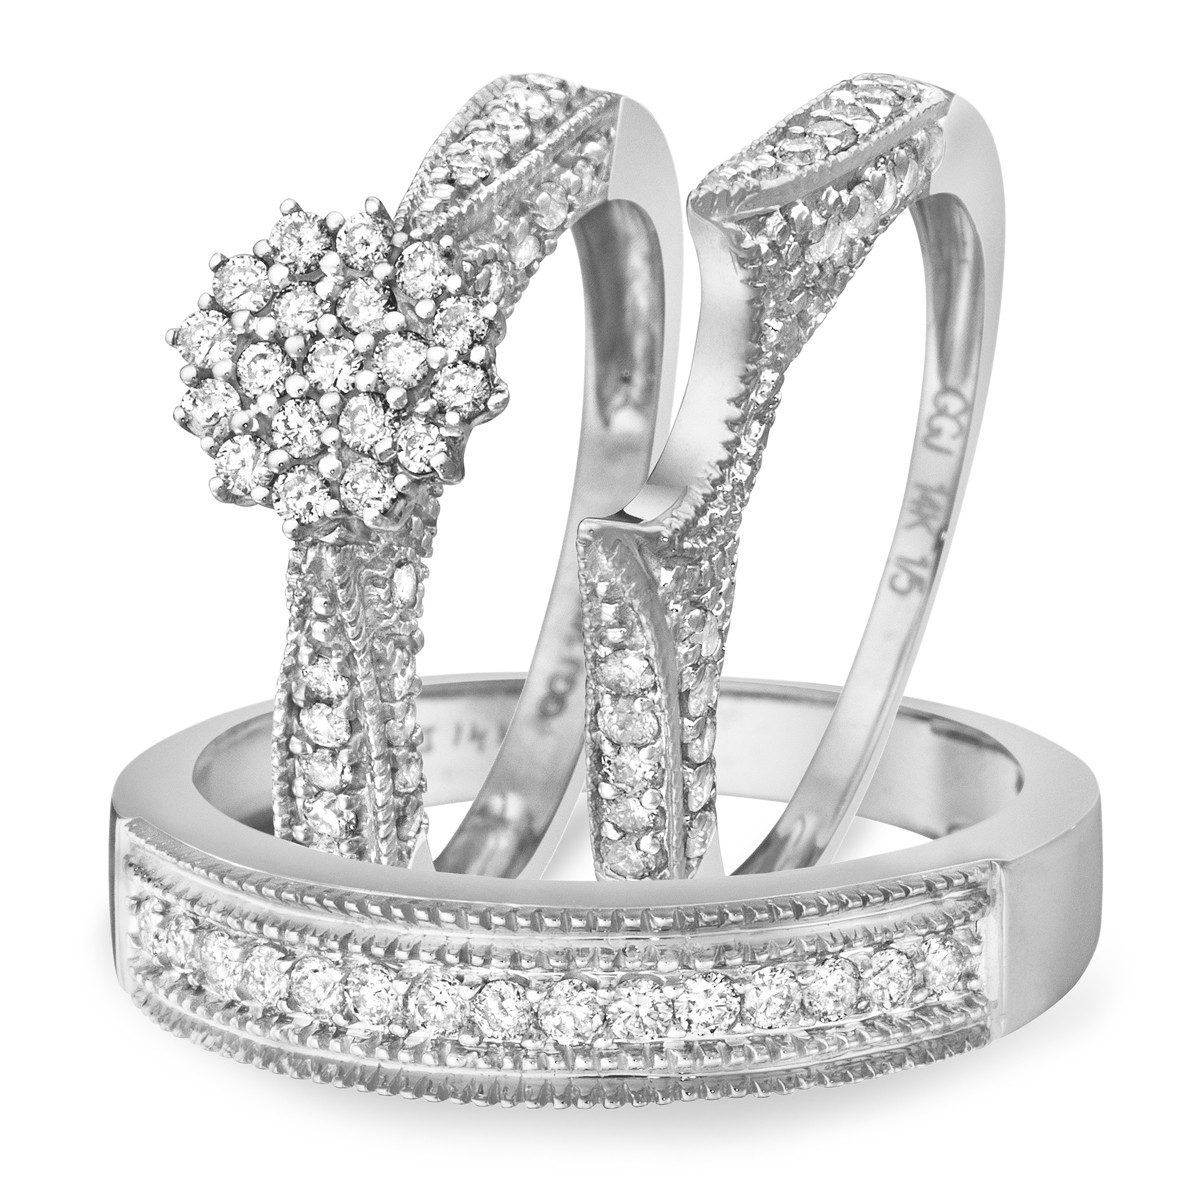 White Gold Wedding Rings Sets
 1 Carat Diamond Trio Wedding Ring Set 14K White Gold